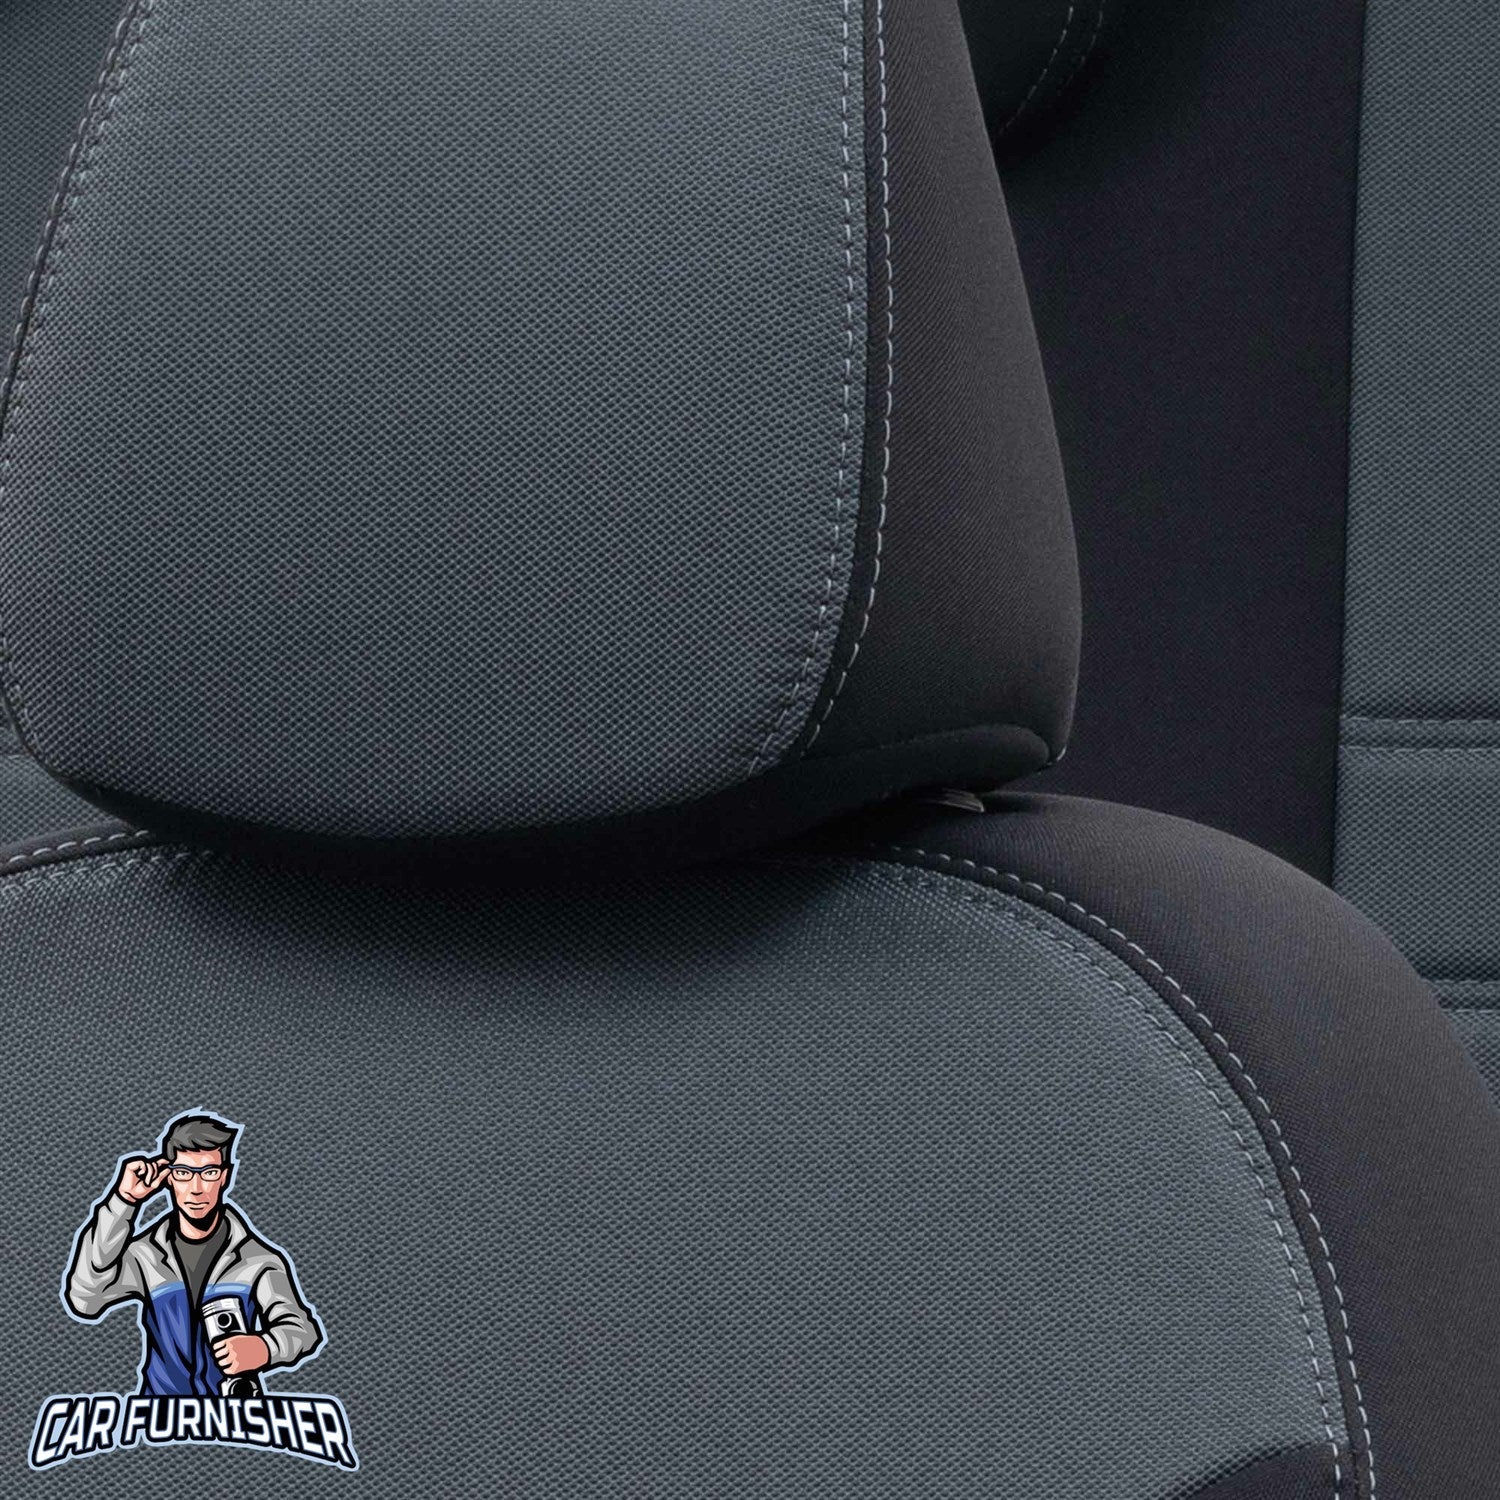 Skoda Scala Seat Covers Original Jacquard Design Smoked Black Jacquard Fabric